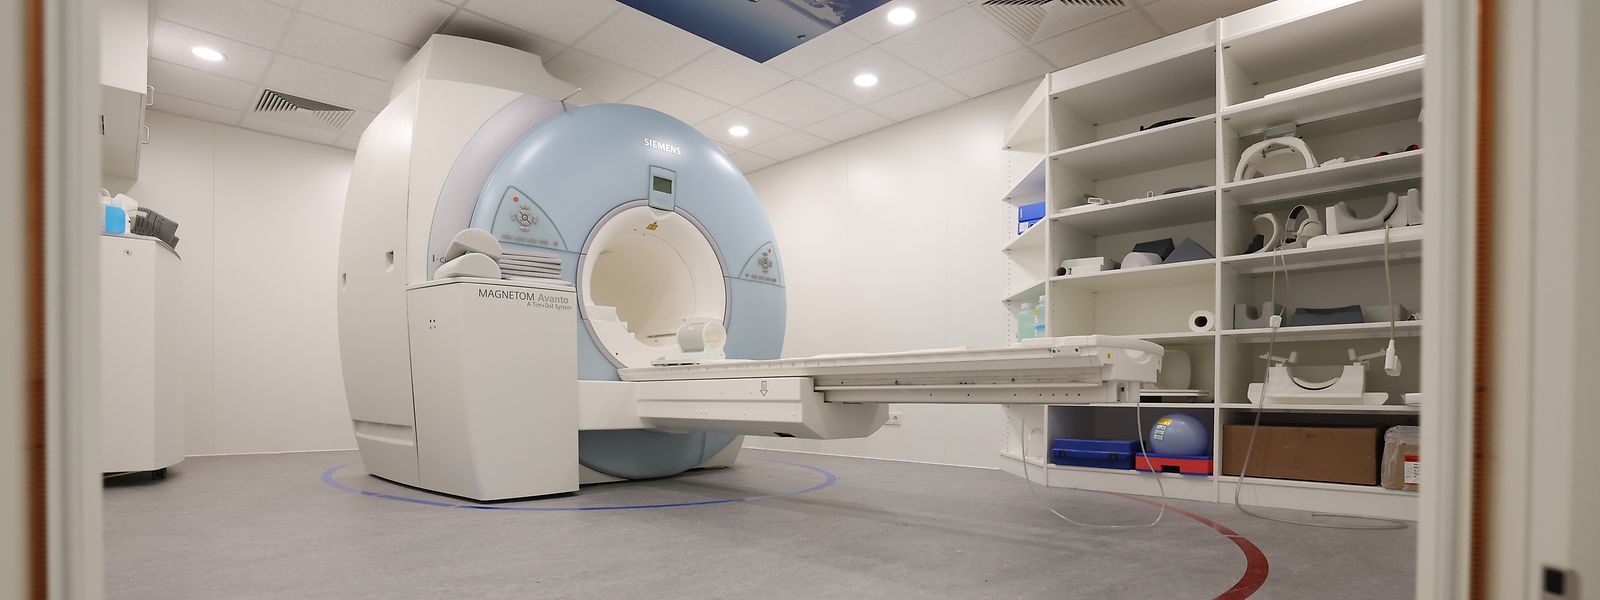 Es laufen noch Gespräche, ob und unter welchen Bedingungen der IRM im Centre Médical Potaschberg in Betrieb gehen kann. 